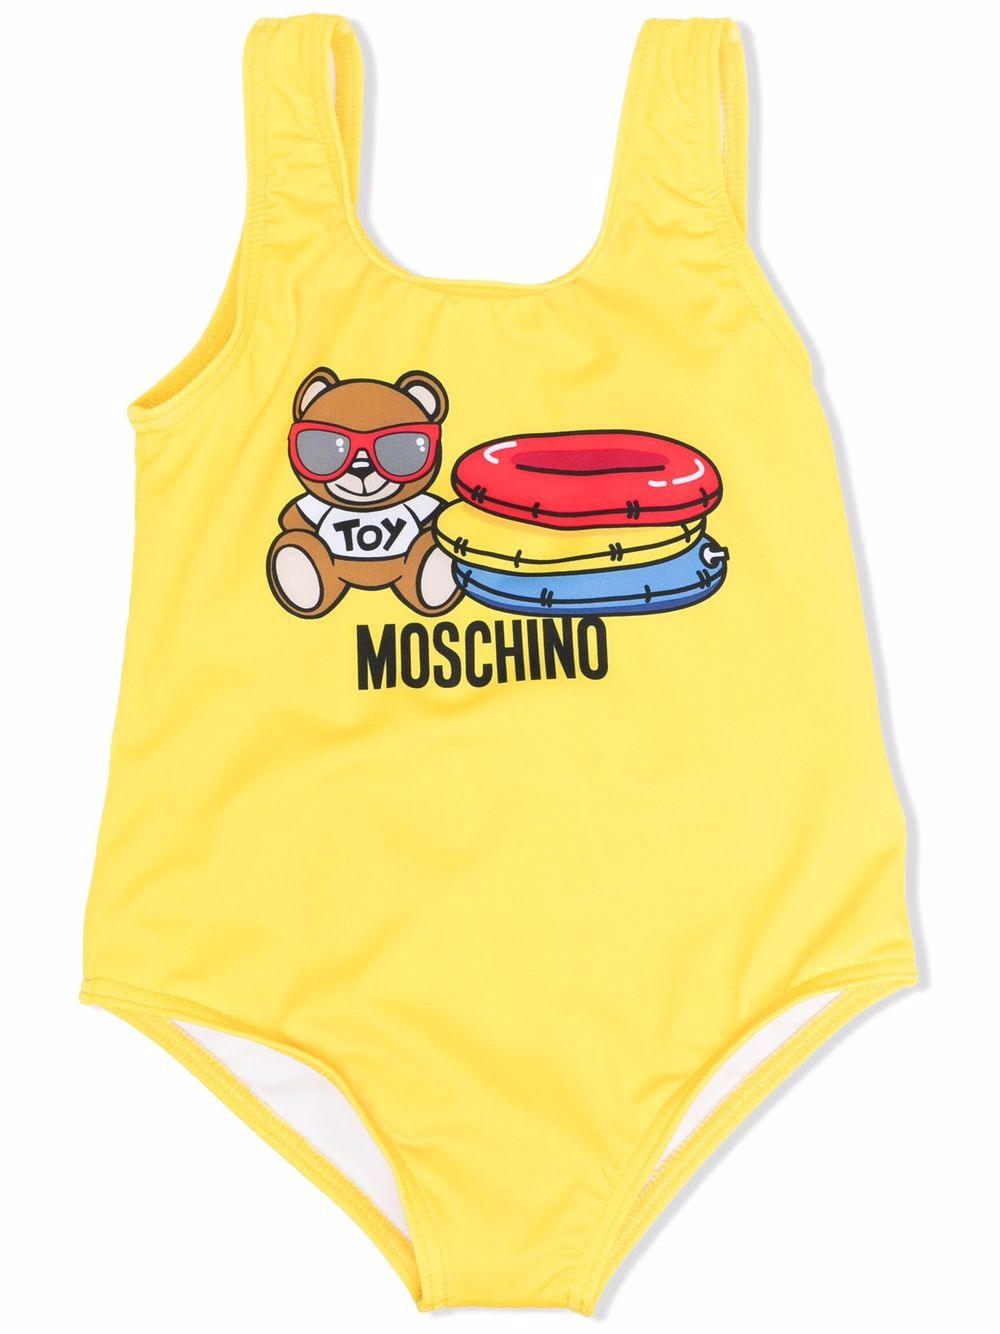 фото Moschino kids купальник с u-образным вырезом и логотипом